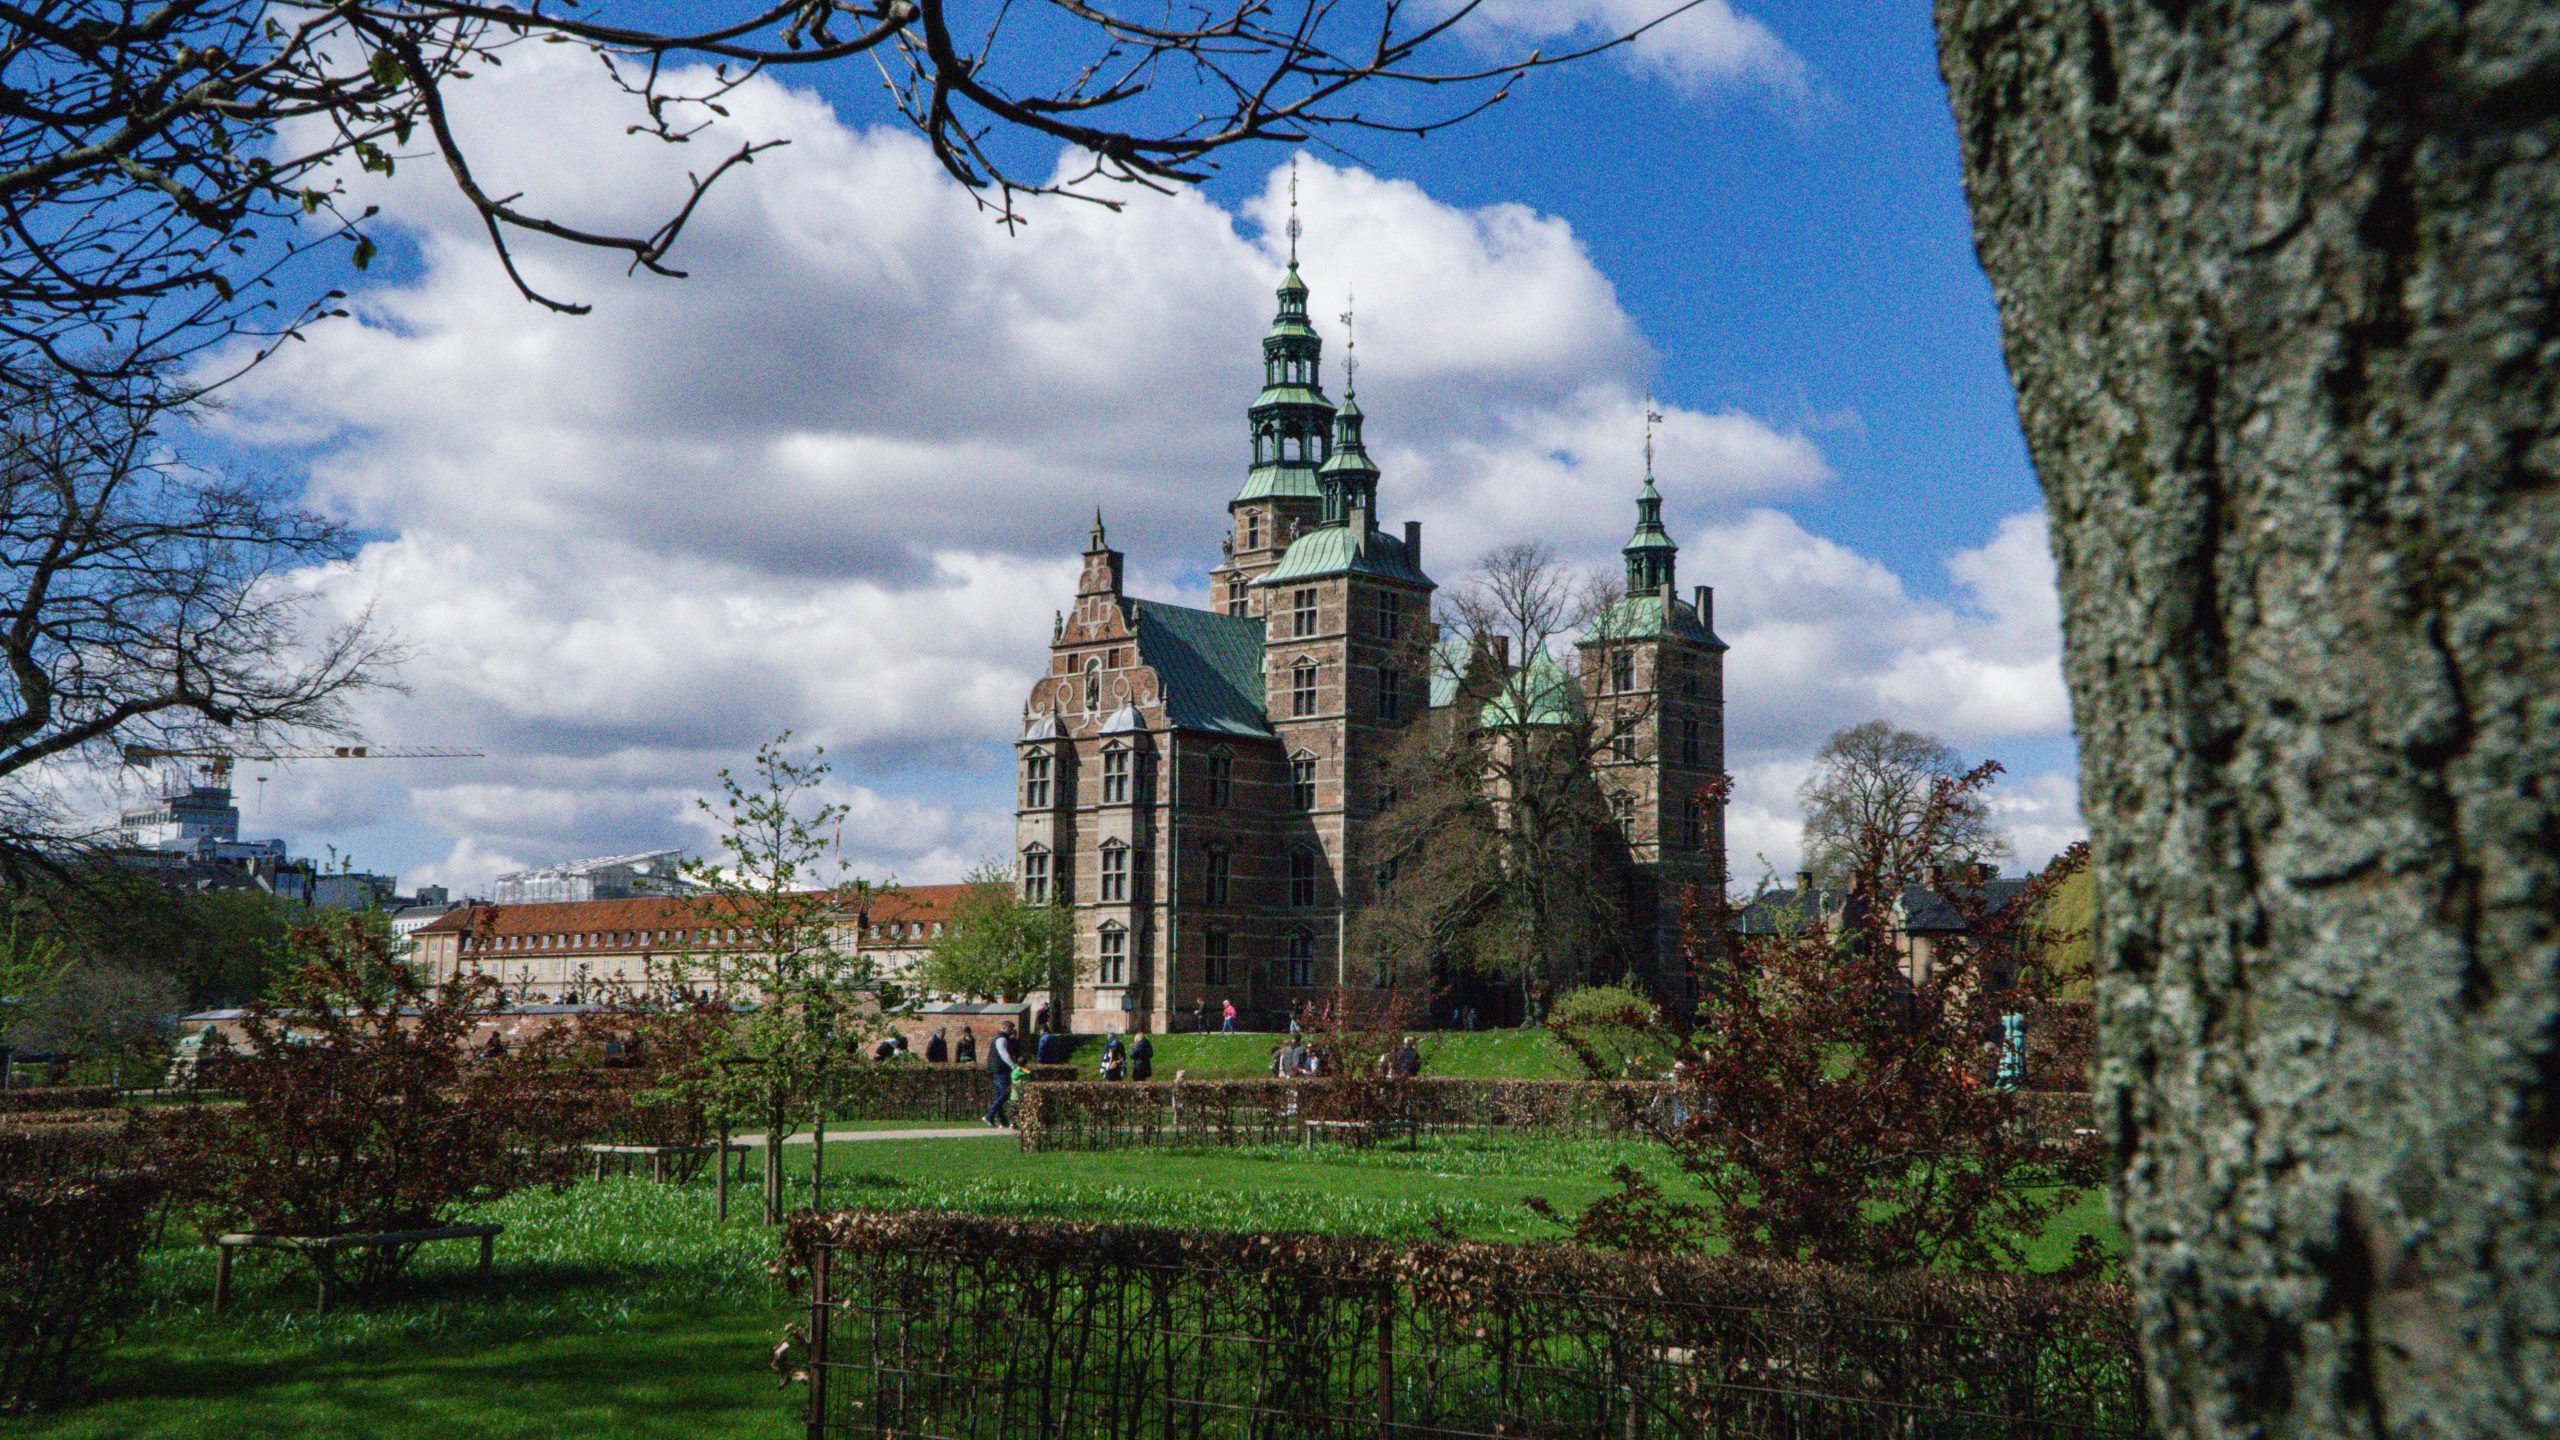 Rosenborg Castle on Around Tours Self-guided walking tour in Copenhagen Denmark Europe Travel Guides